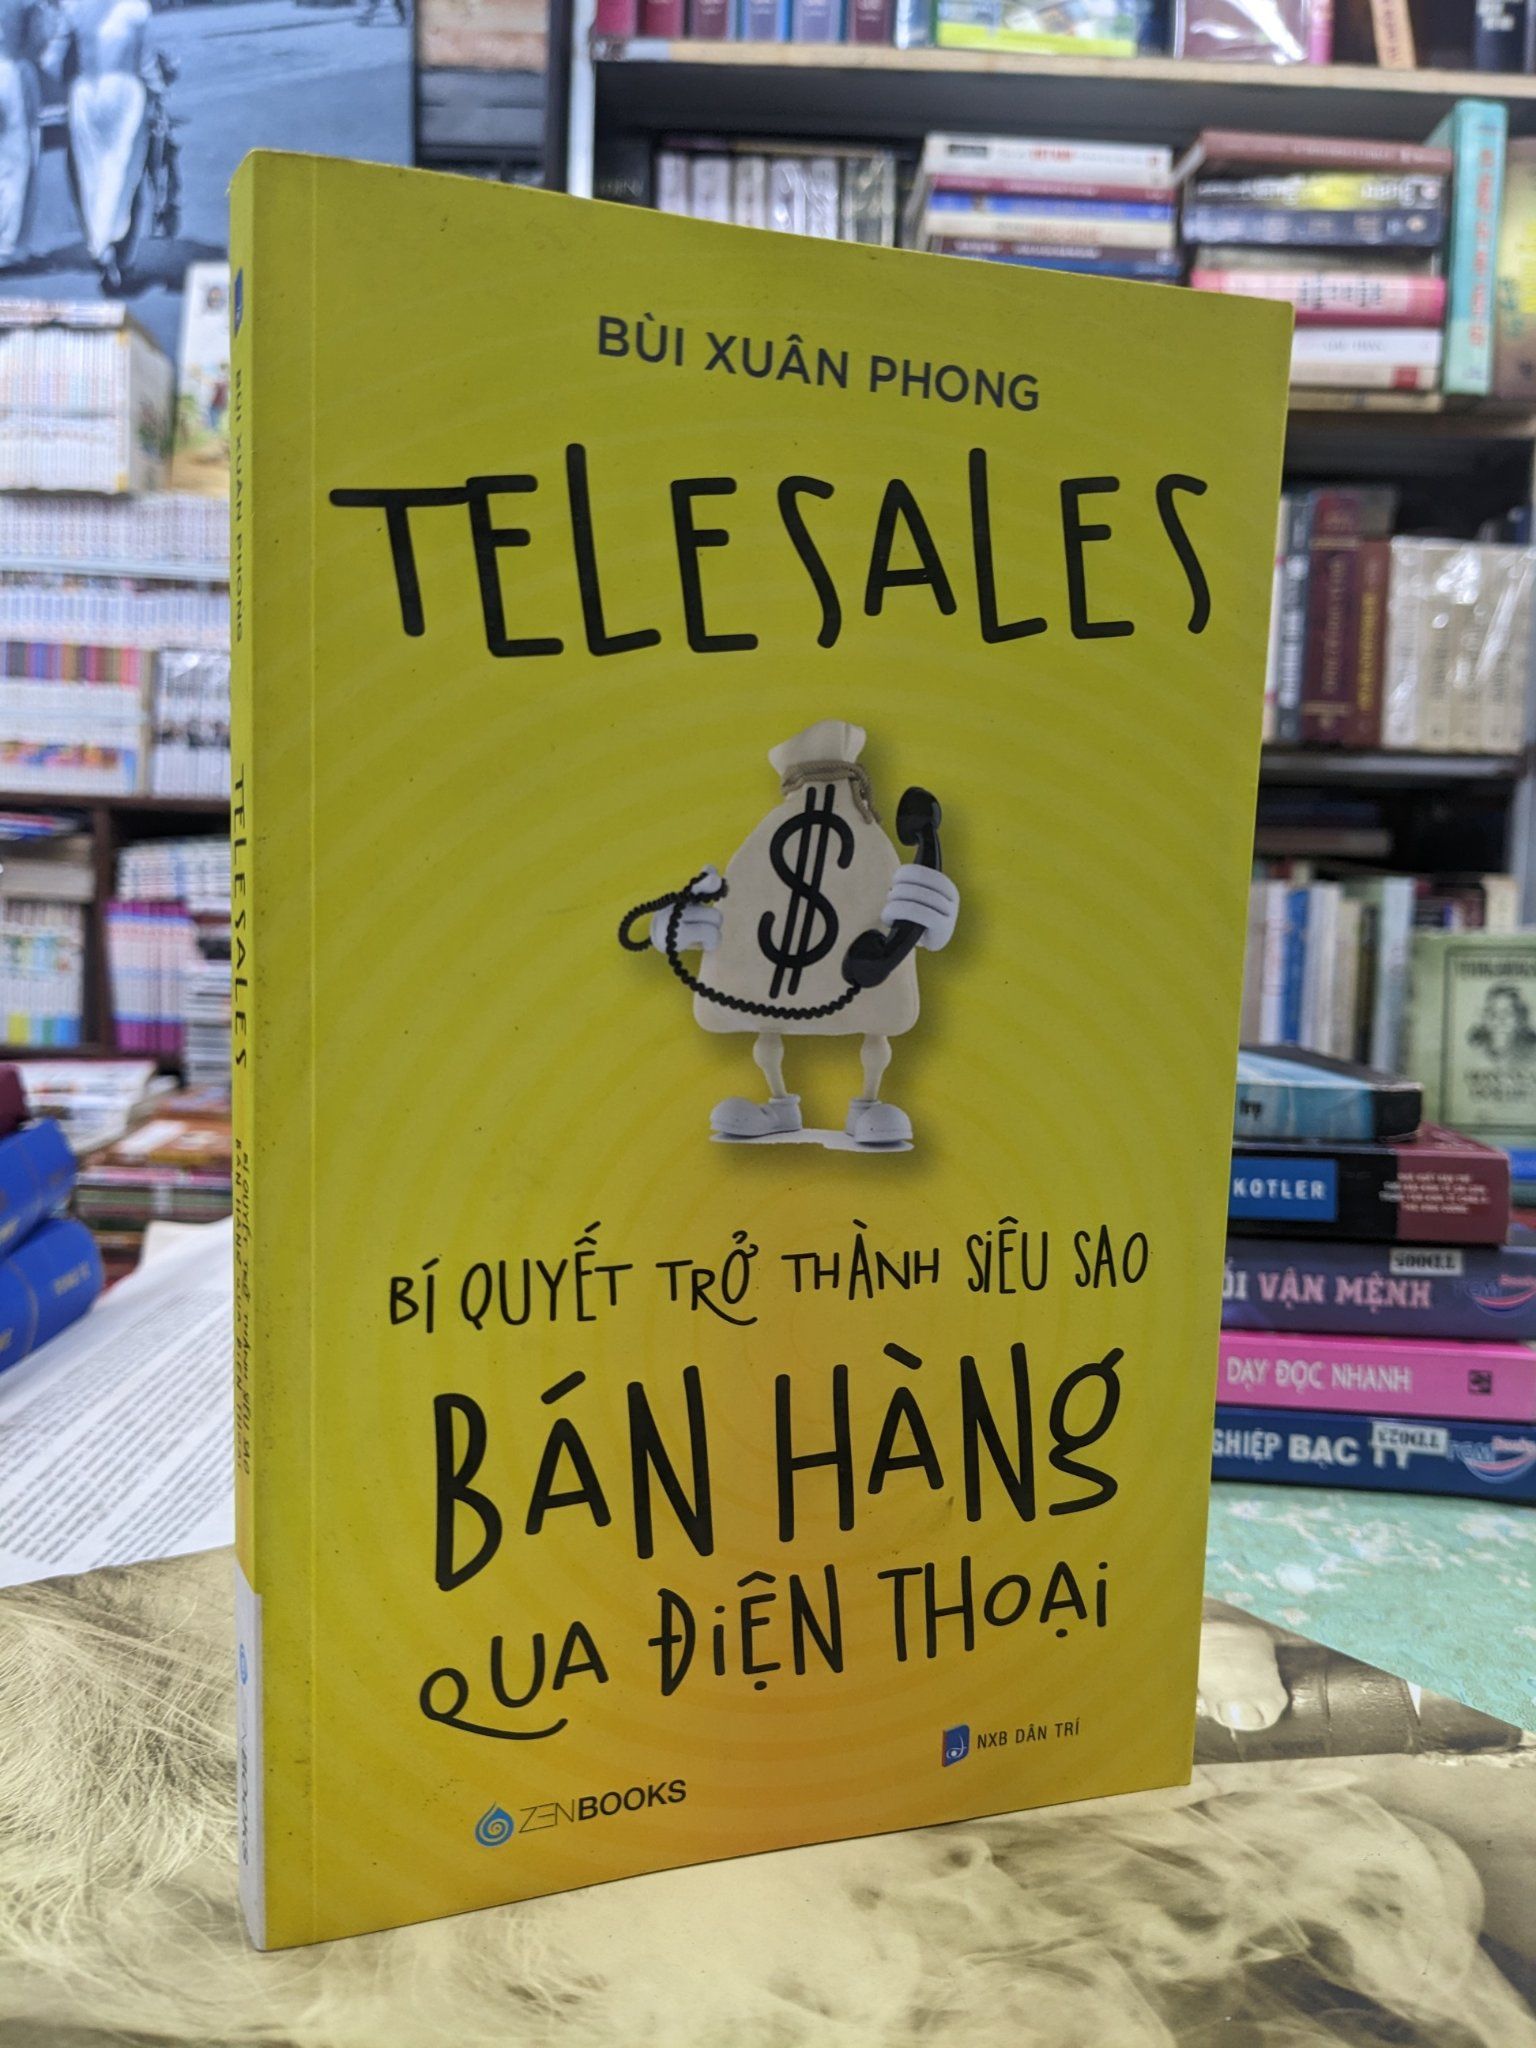  Telesales Bí quyết trở thành siêu sao bán hàng qua điện thoại - Bùi Xuân Phong 